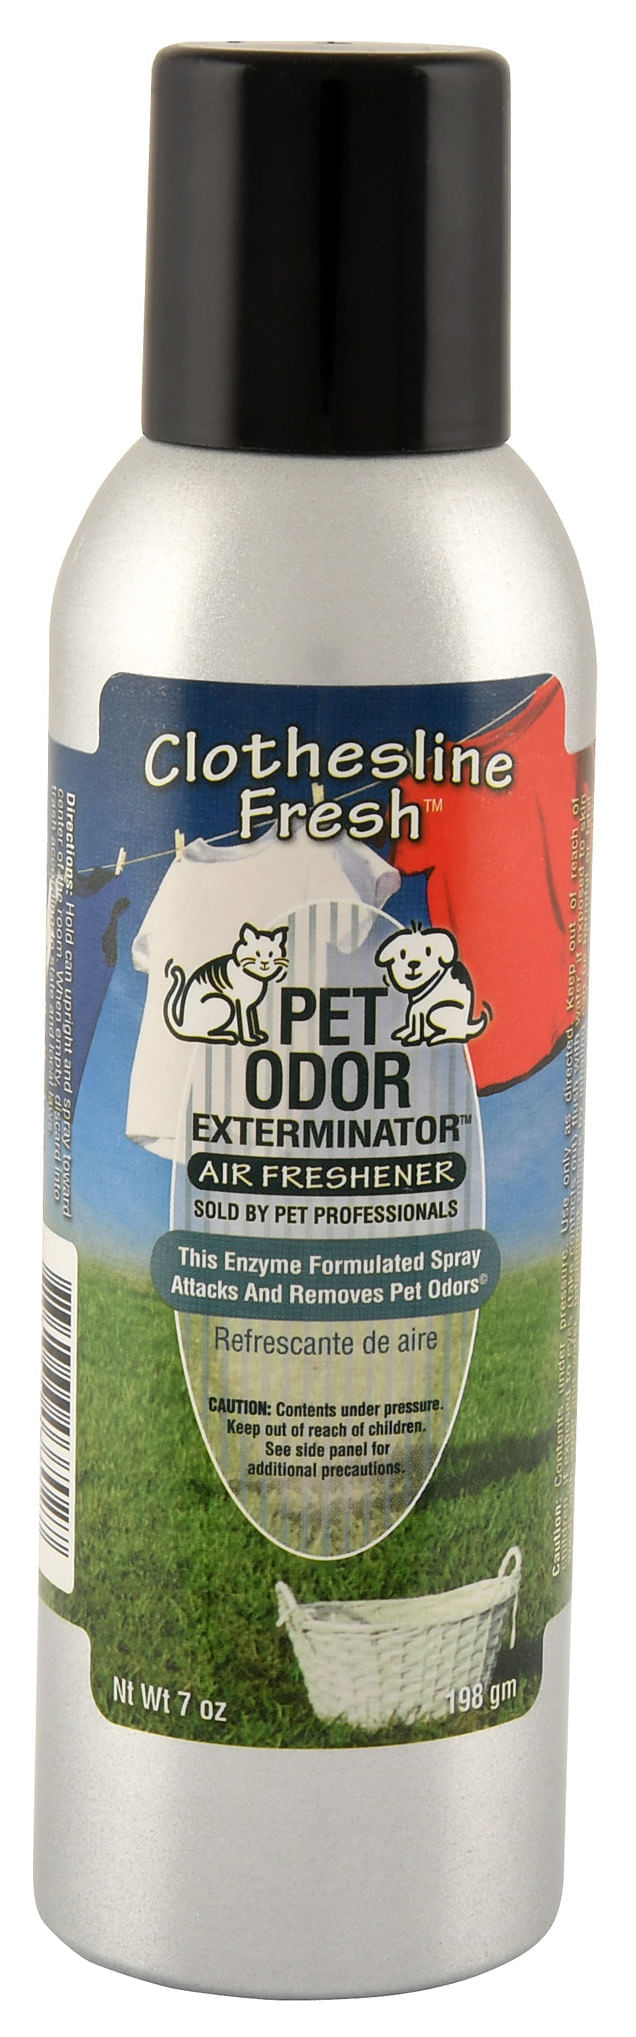 Pet-Odor-Exterminator-Air-Freshener-Clothesline-Fresh-7oz